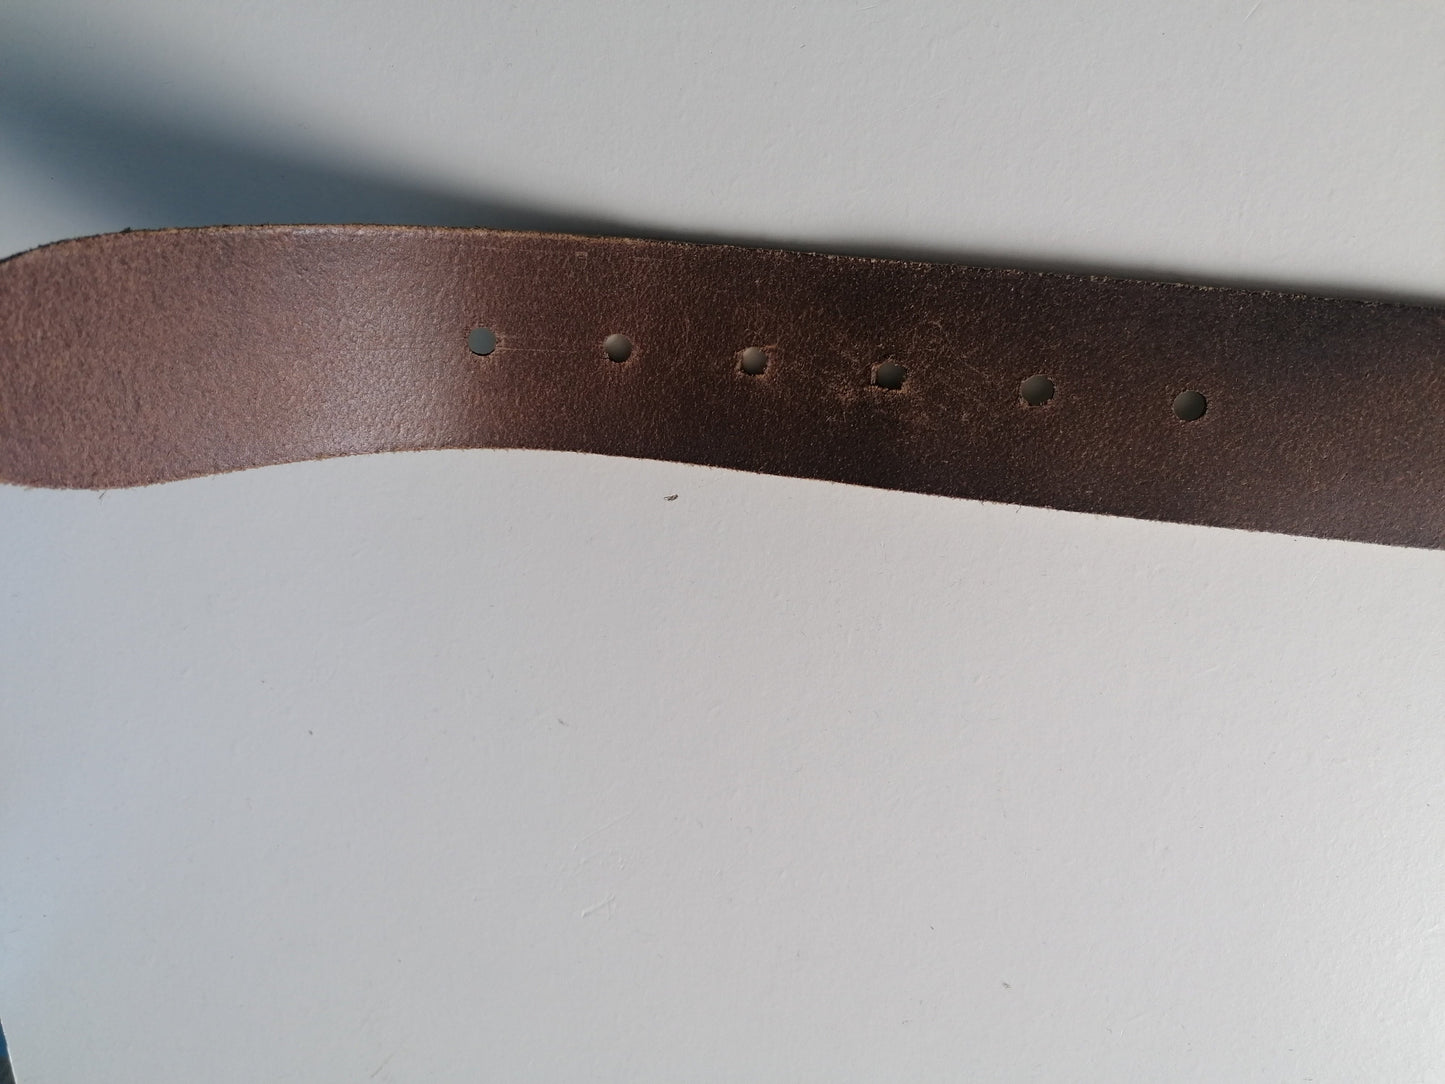 Ledergürtel mit Schnalle. Braun weiß gefärbt. 95 - 110 cm.